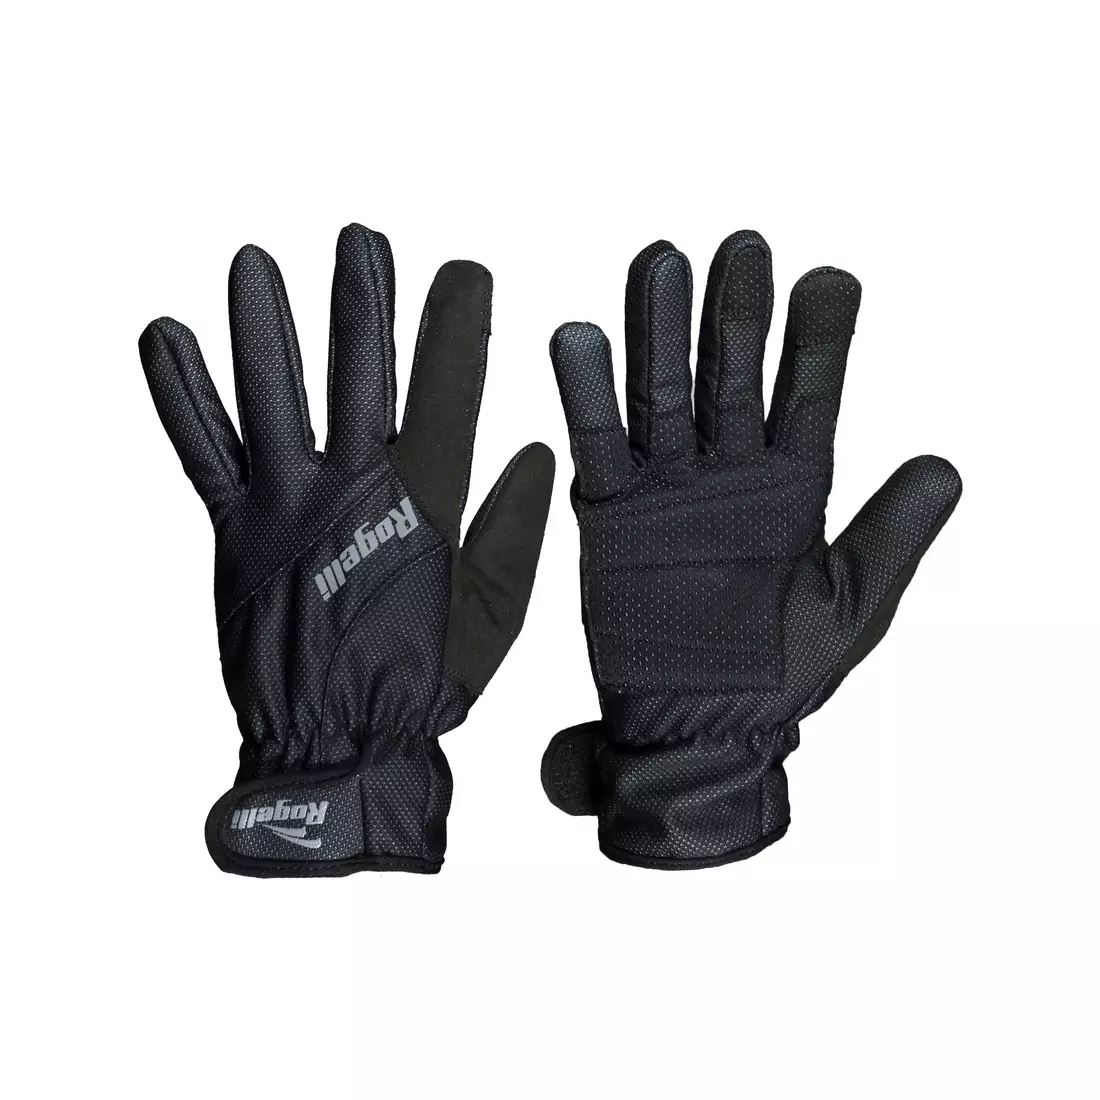 ROGELLI ALBERTA 2.0 mănuși de iarnă pentru ciclism, negre